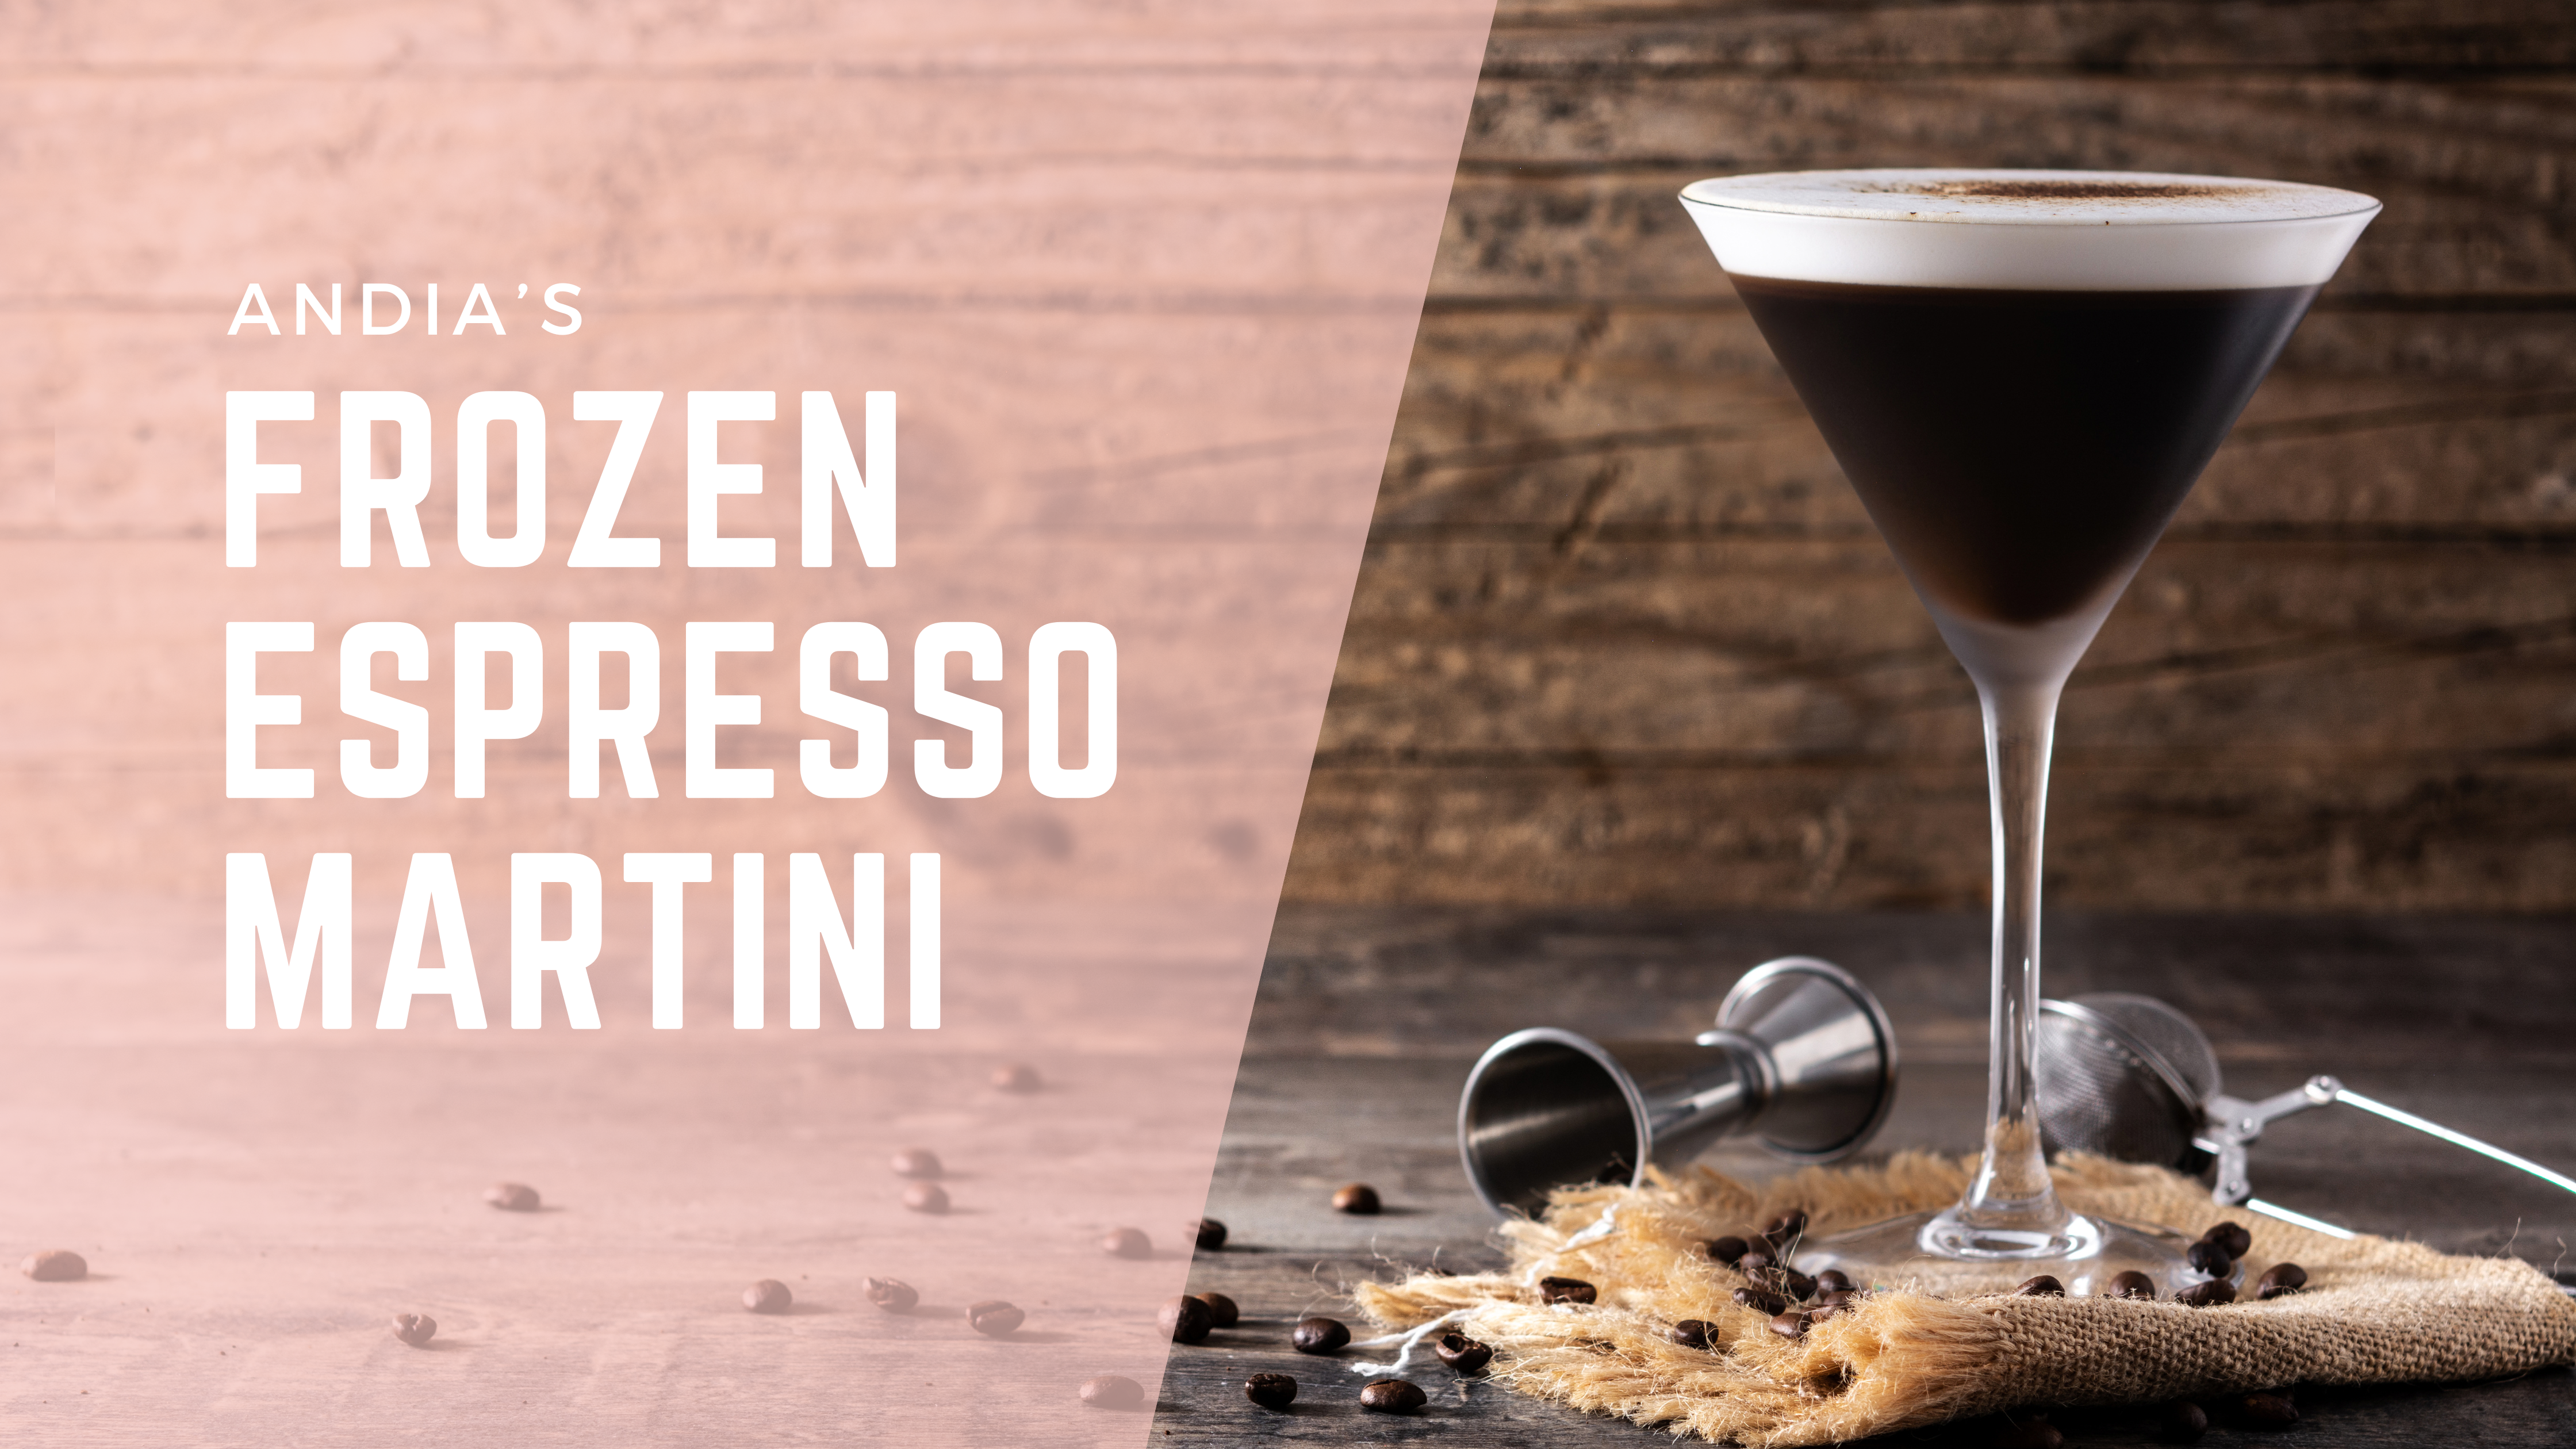 Frozen espresso martini recipe